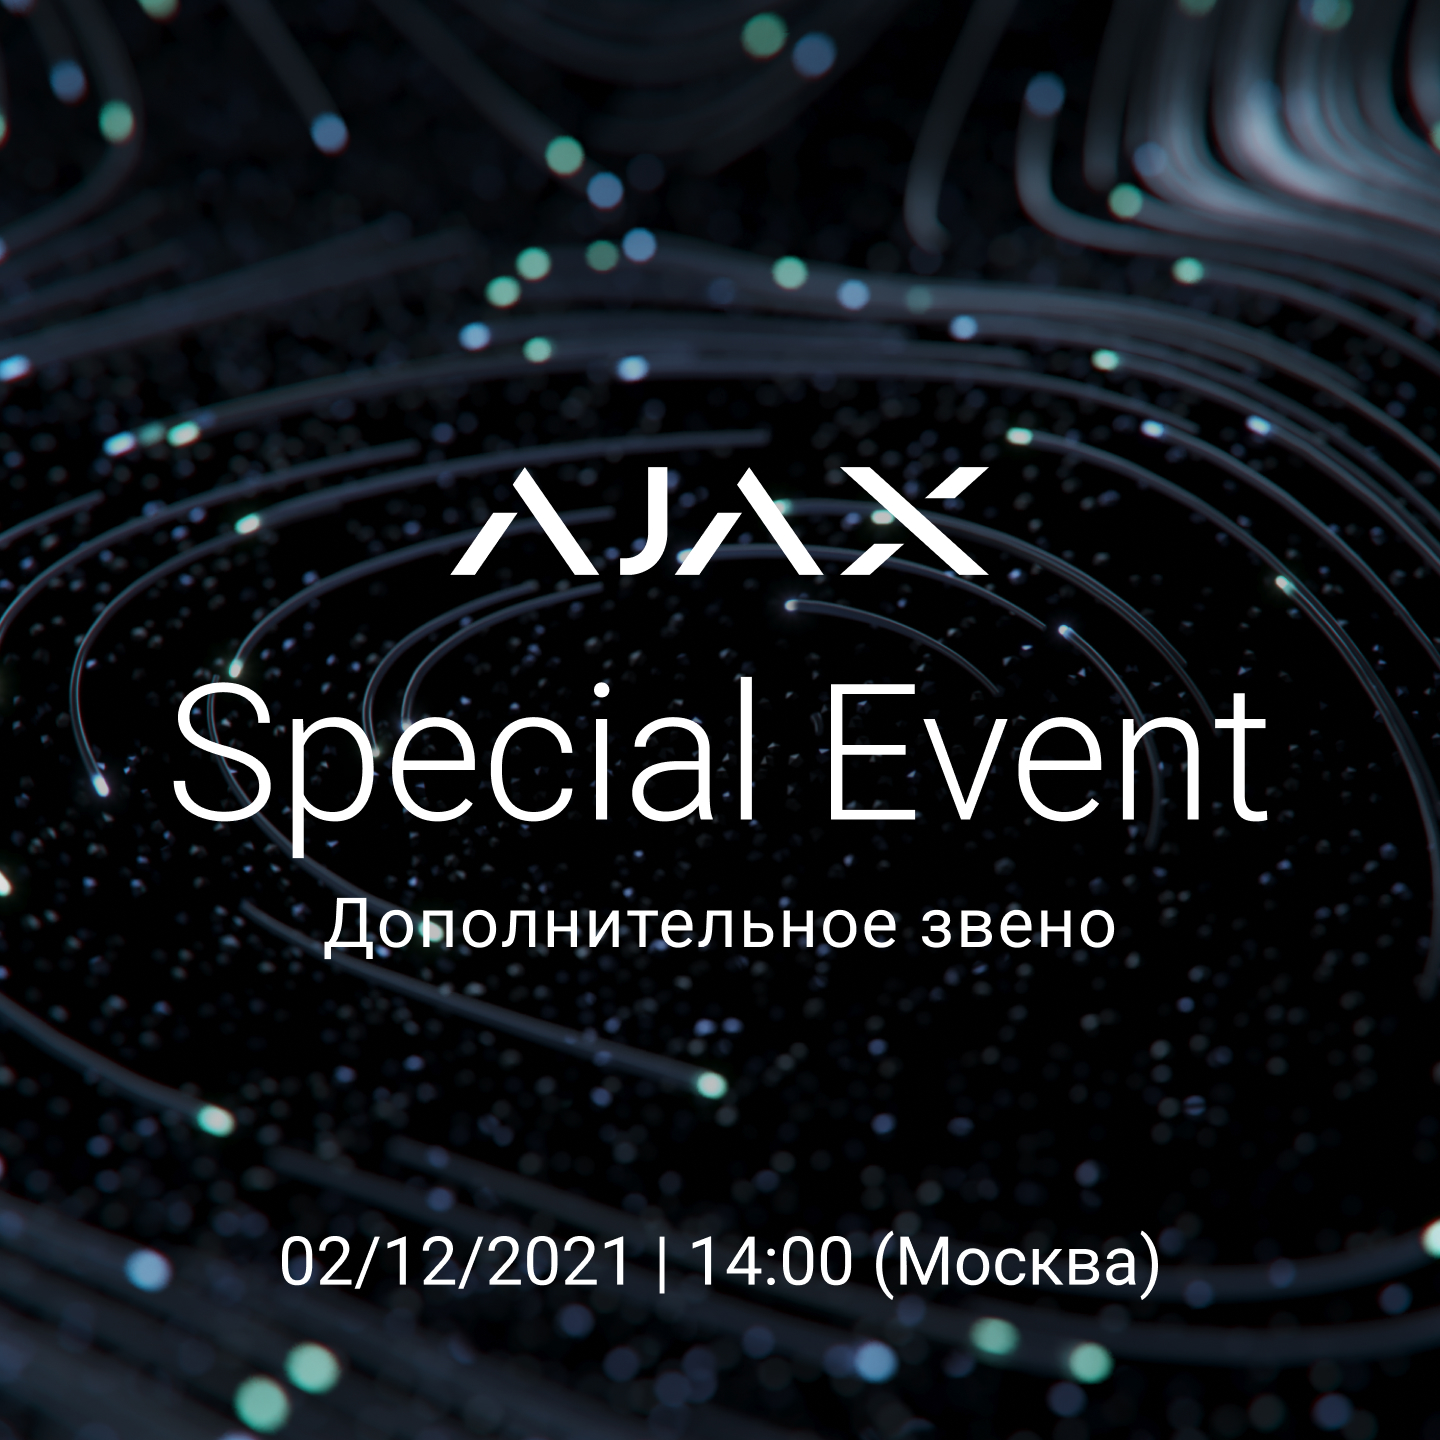 Ajax Special Event<